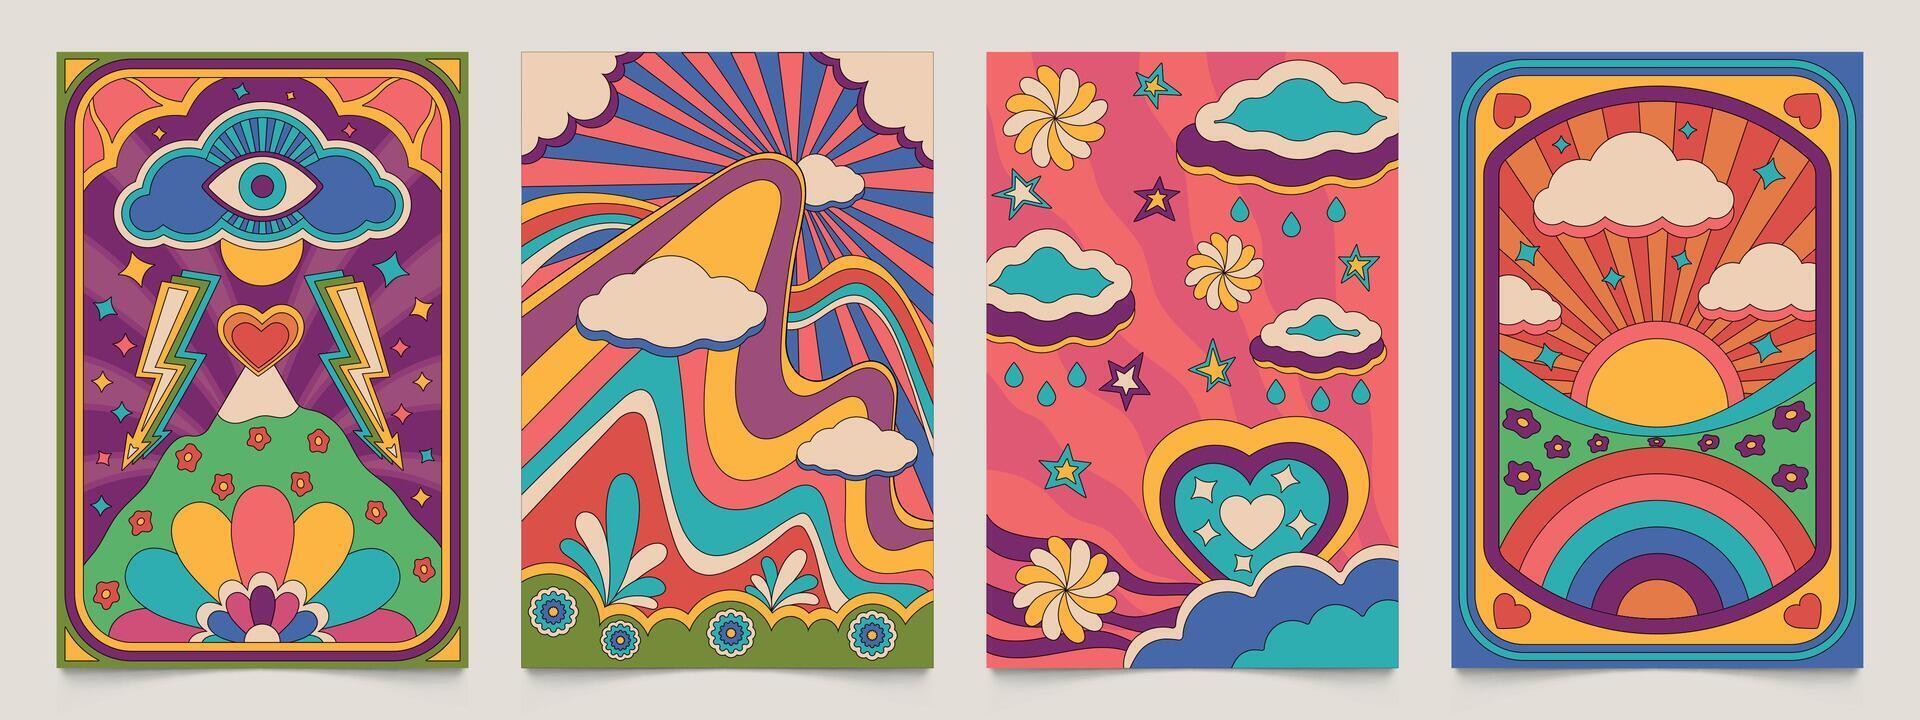 hippie affiches. psychédélique rétro fond d'écran avec floral camomille fleurs et végétaux, floral décoratif conception Années 1970 style. vecteur abstrait ancien fond d'écran